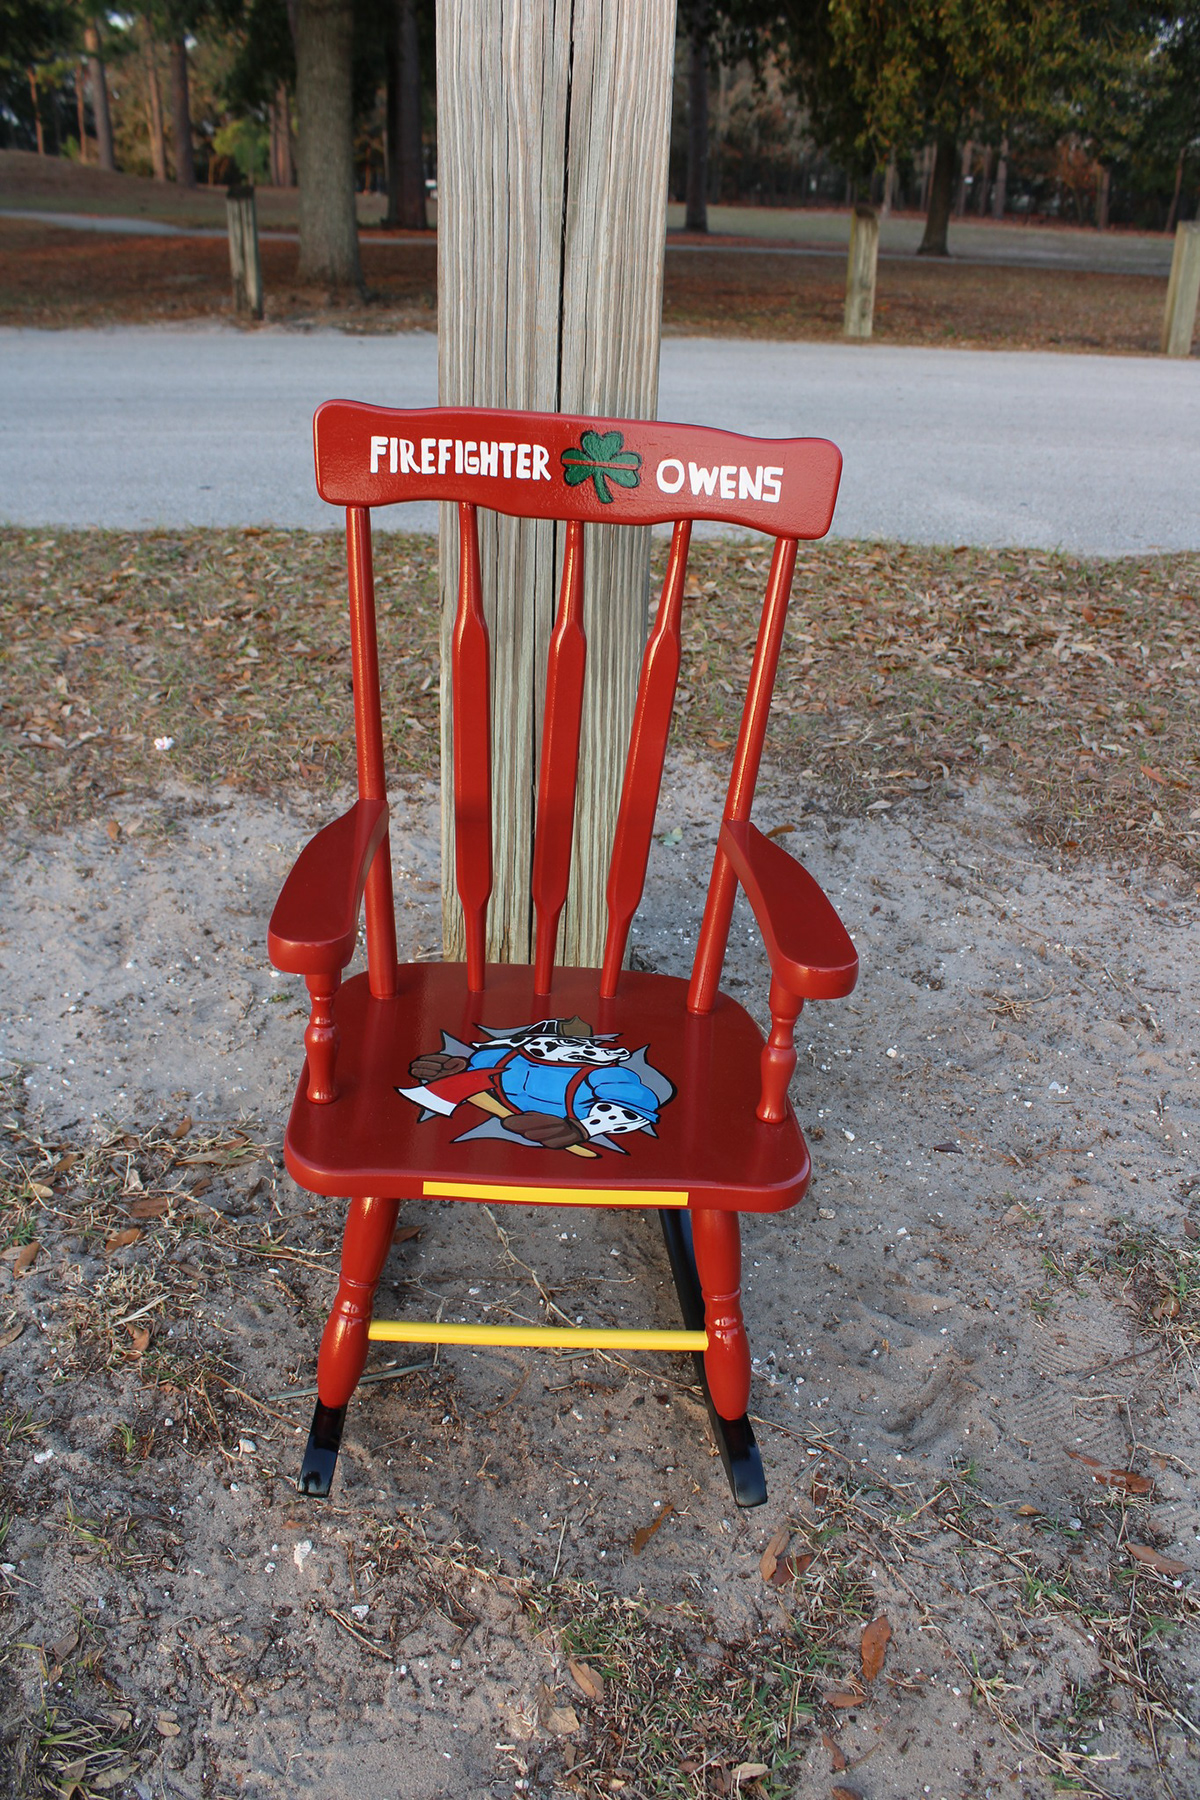 rocking chair Firefighter children's child furniture  kid furniture  dalmation firetruck red